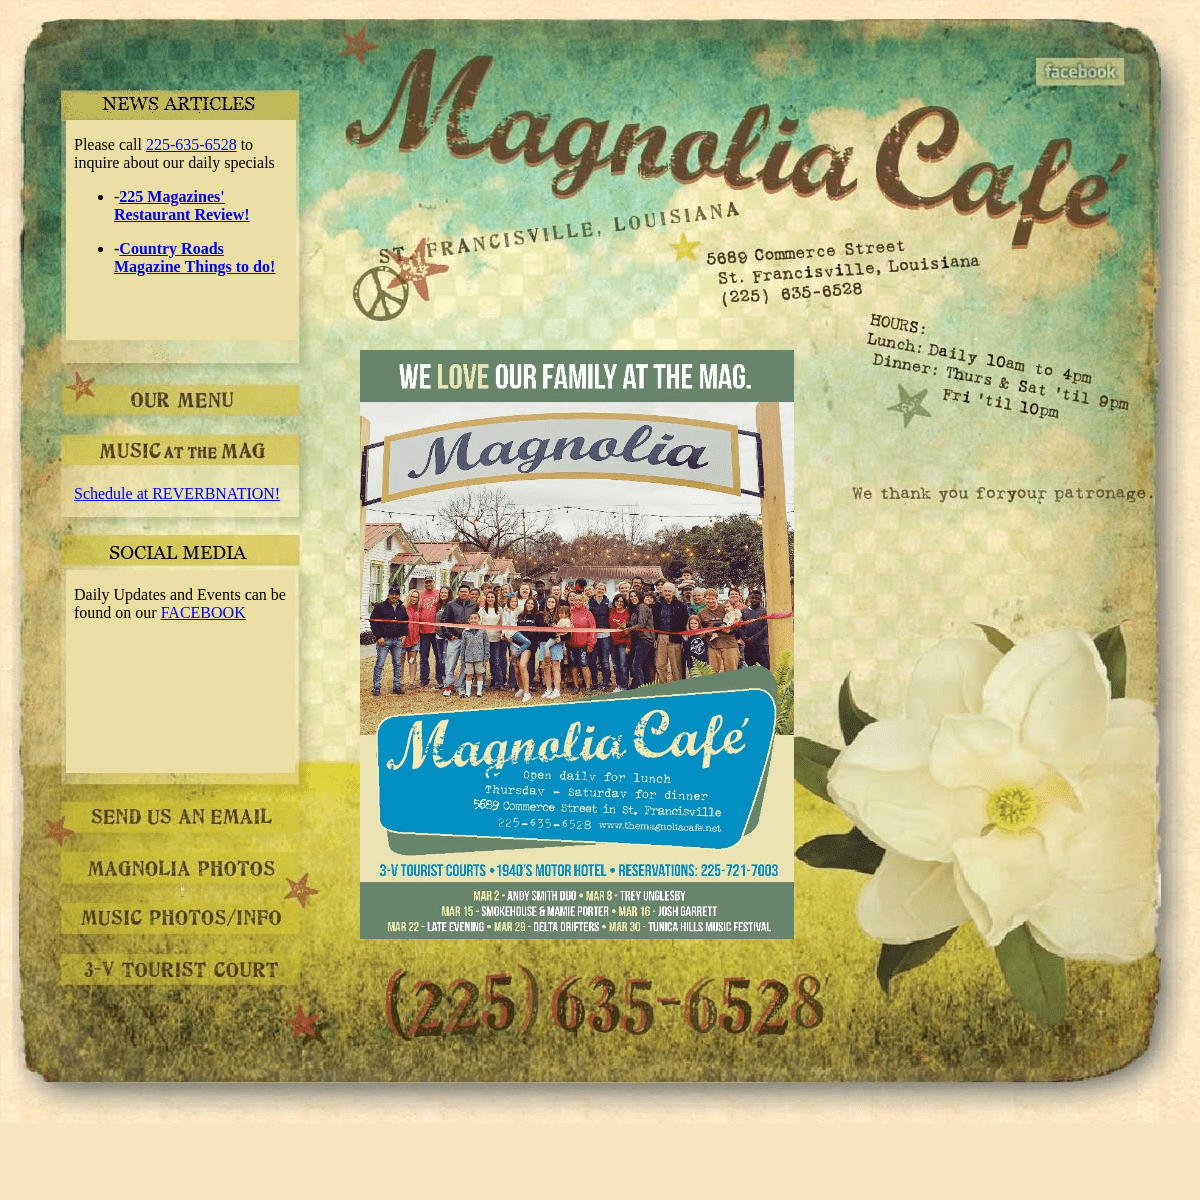 Welcome to the Magnolia Café